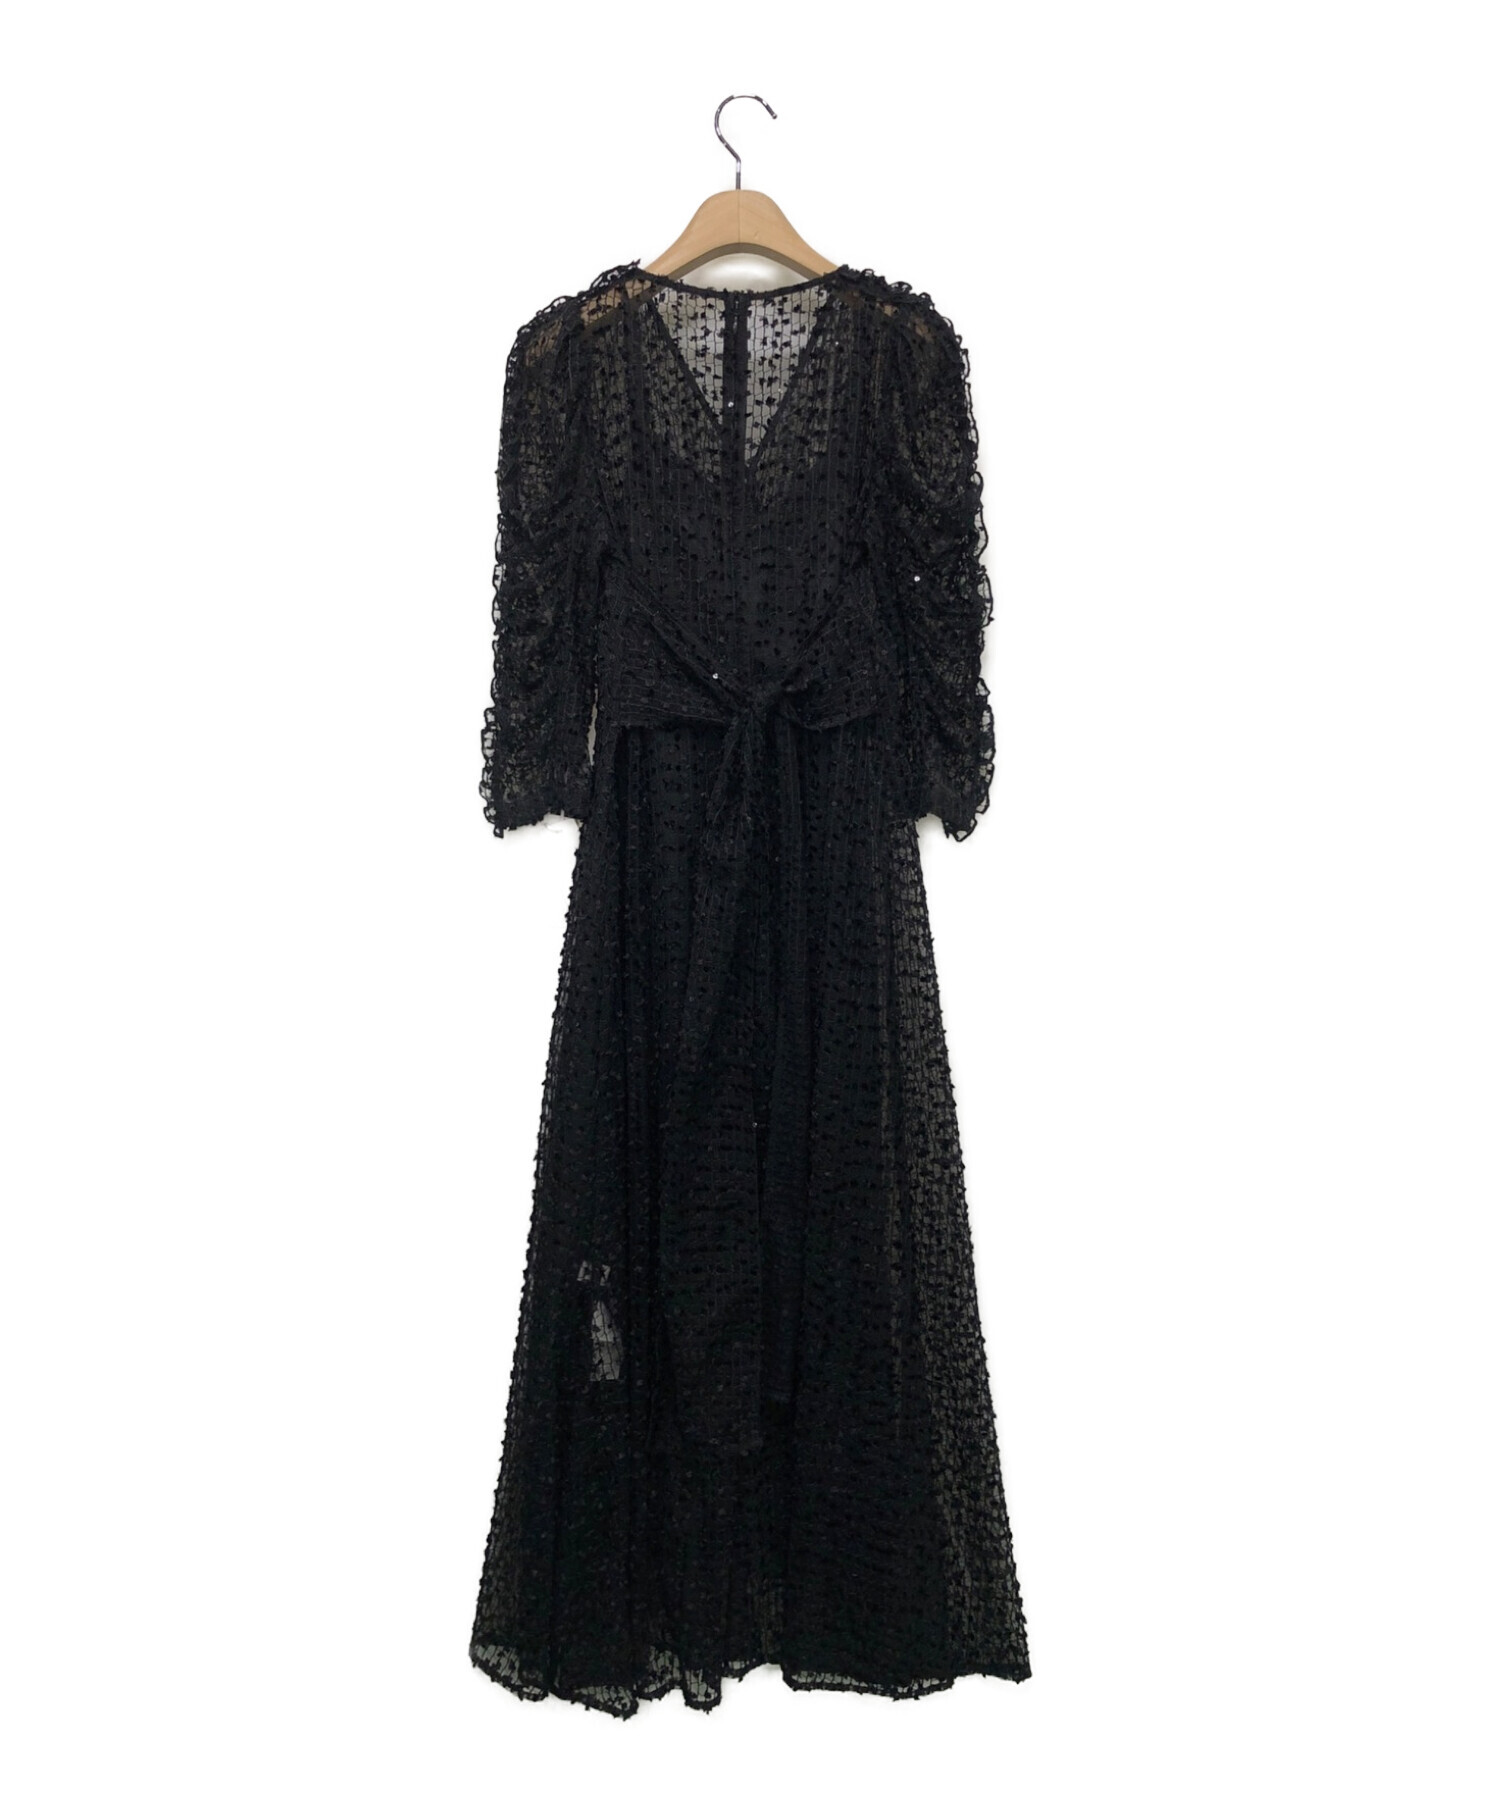 CELFORD (セルフォード) リボンチュールVネックドレス ブラック サイズ:36